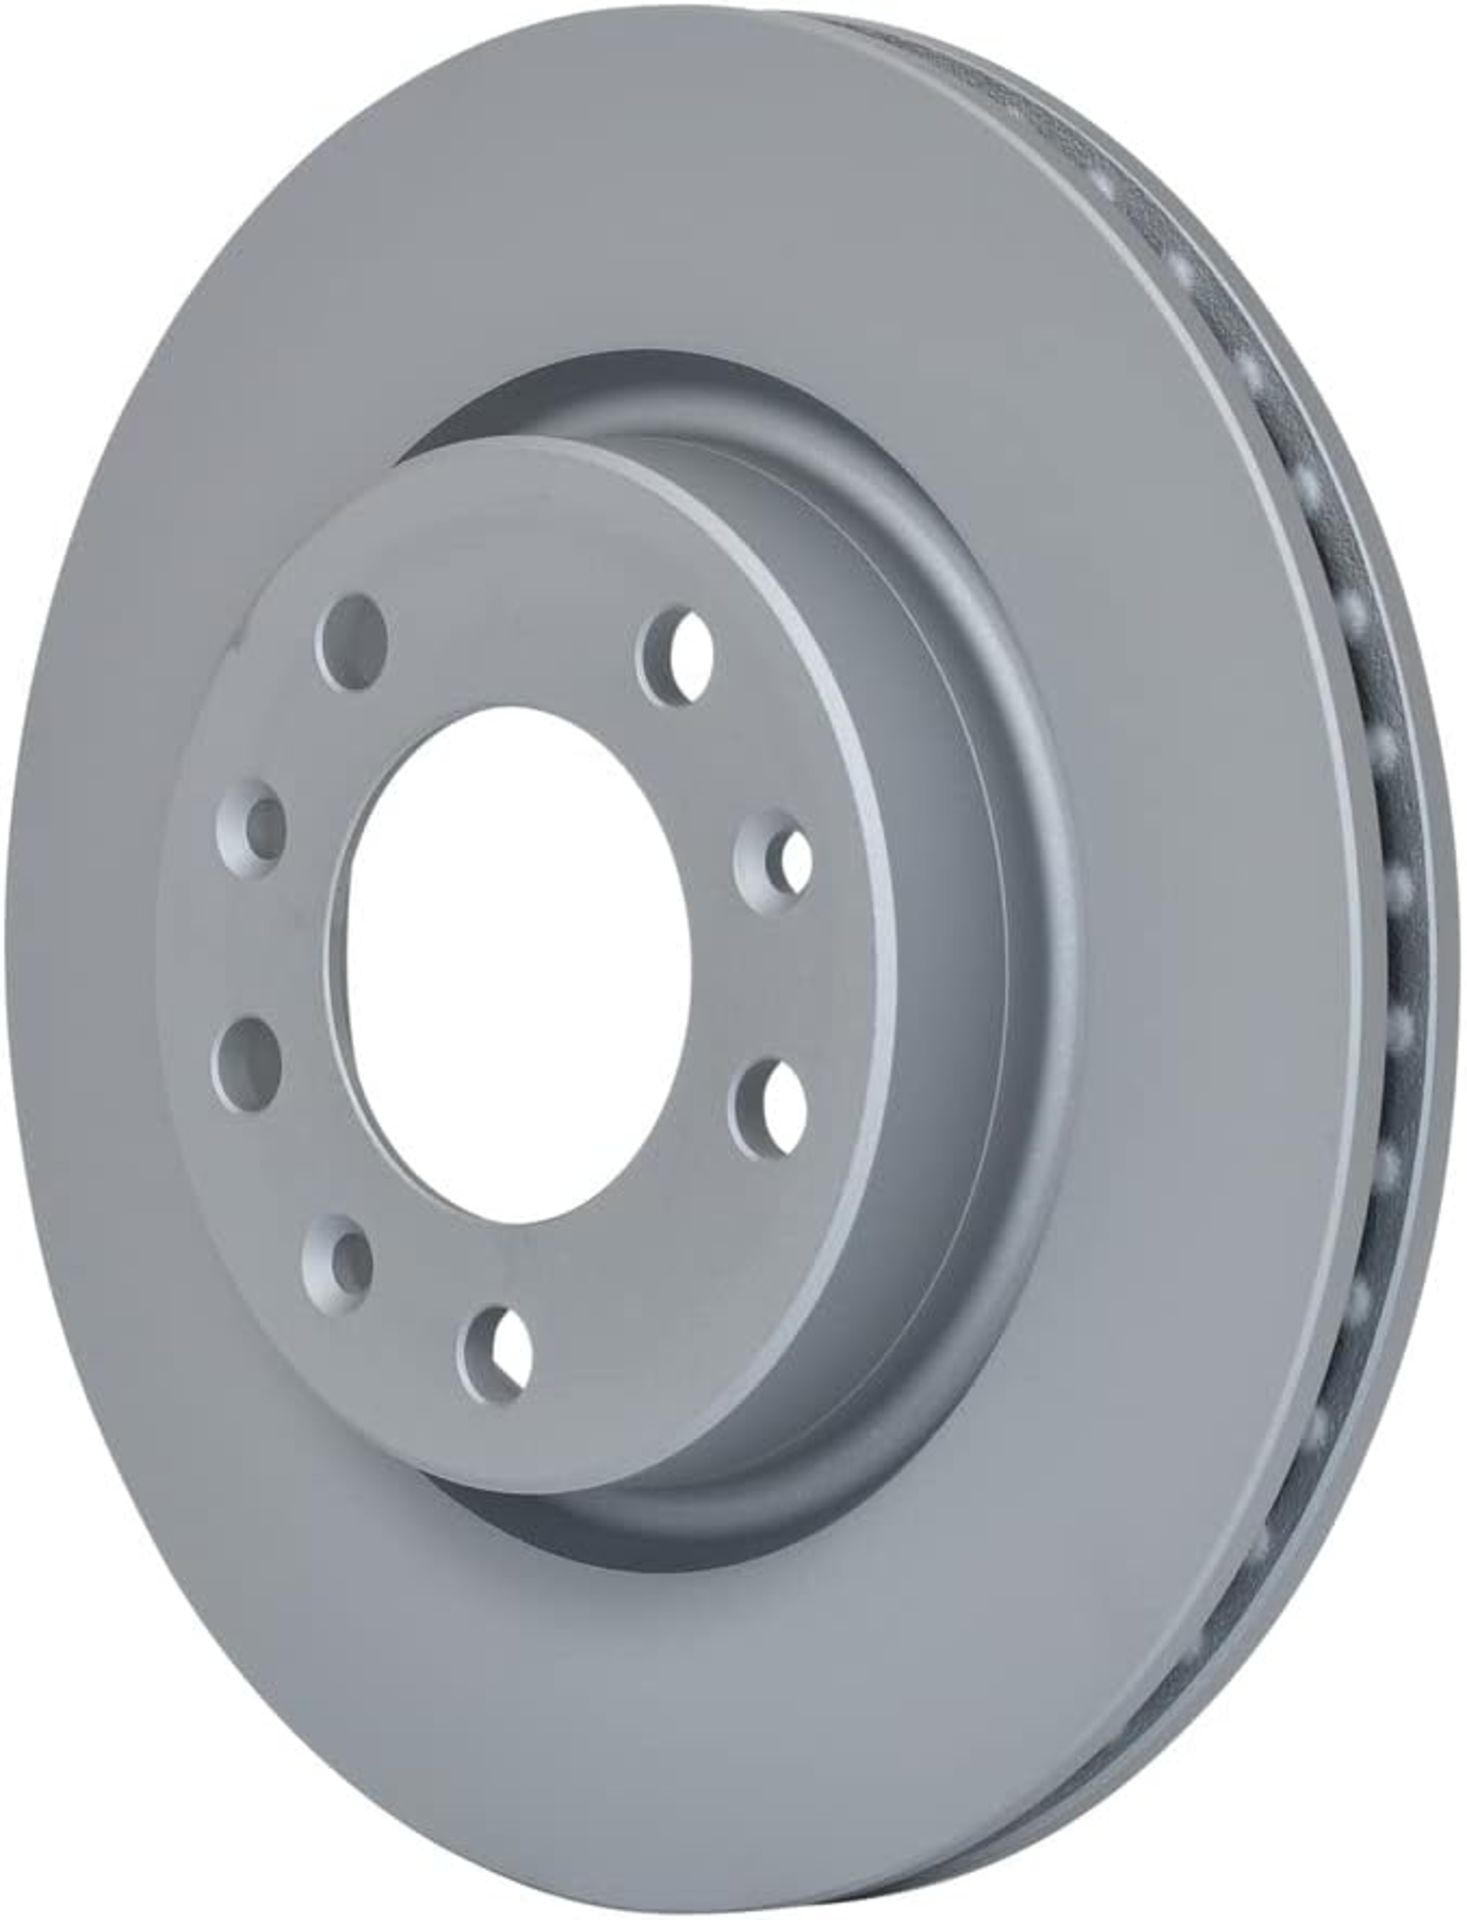 Bosch BD2173 Brake Discs - Front Axle - ECE-R90 Certified - 1 Set of 2 Discs